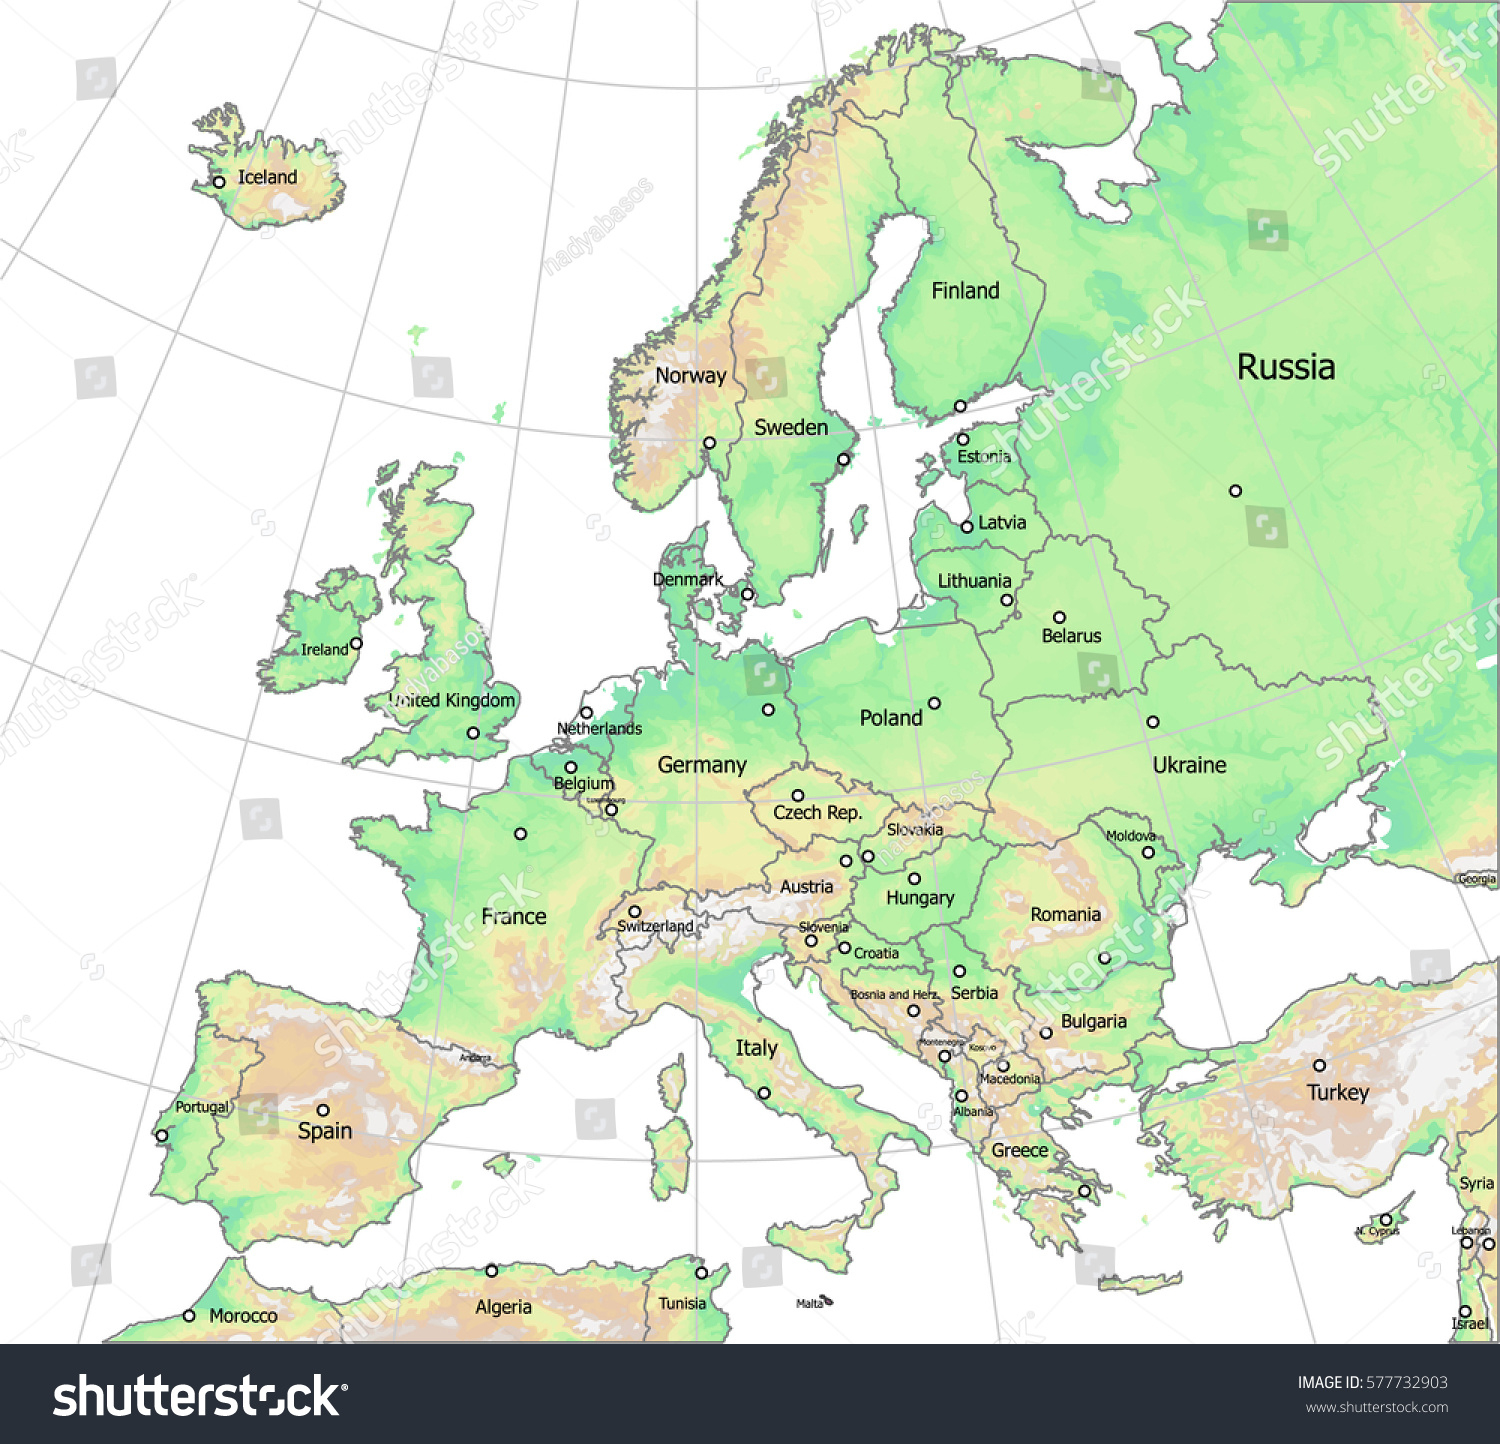 Image Vectorielle De Stock De Carte De L&amp;#039;altitude De L à Carte Europe Pays Capitales 